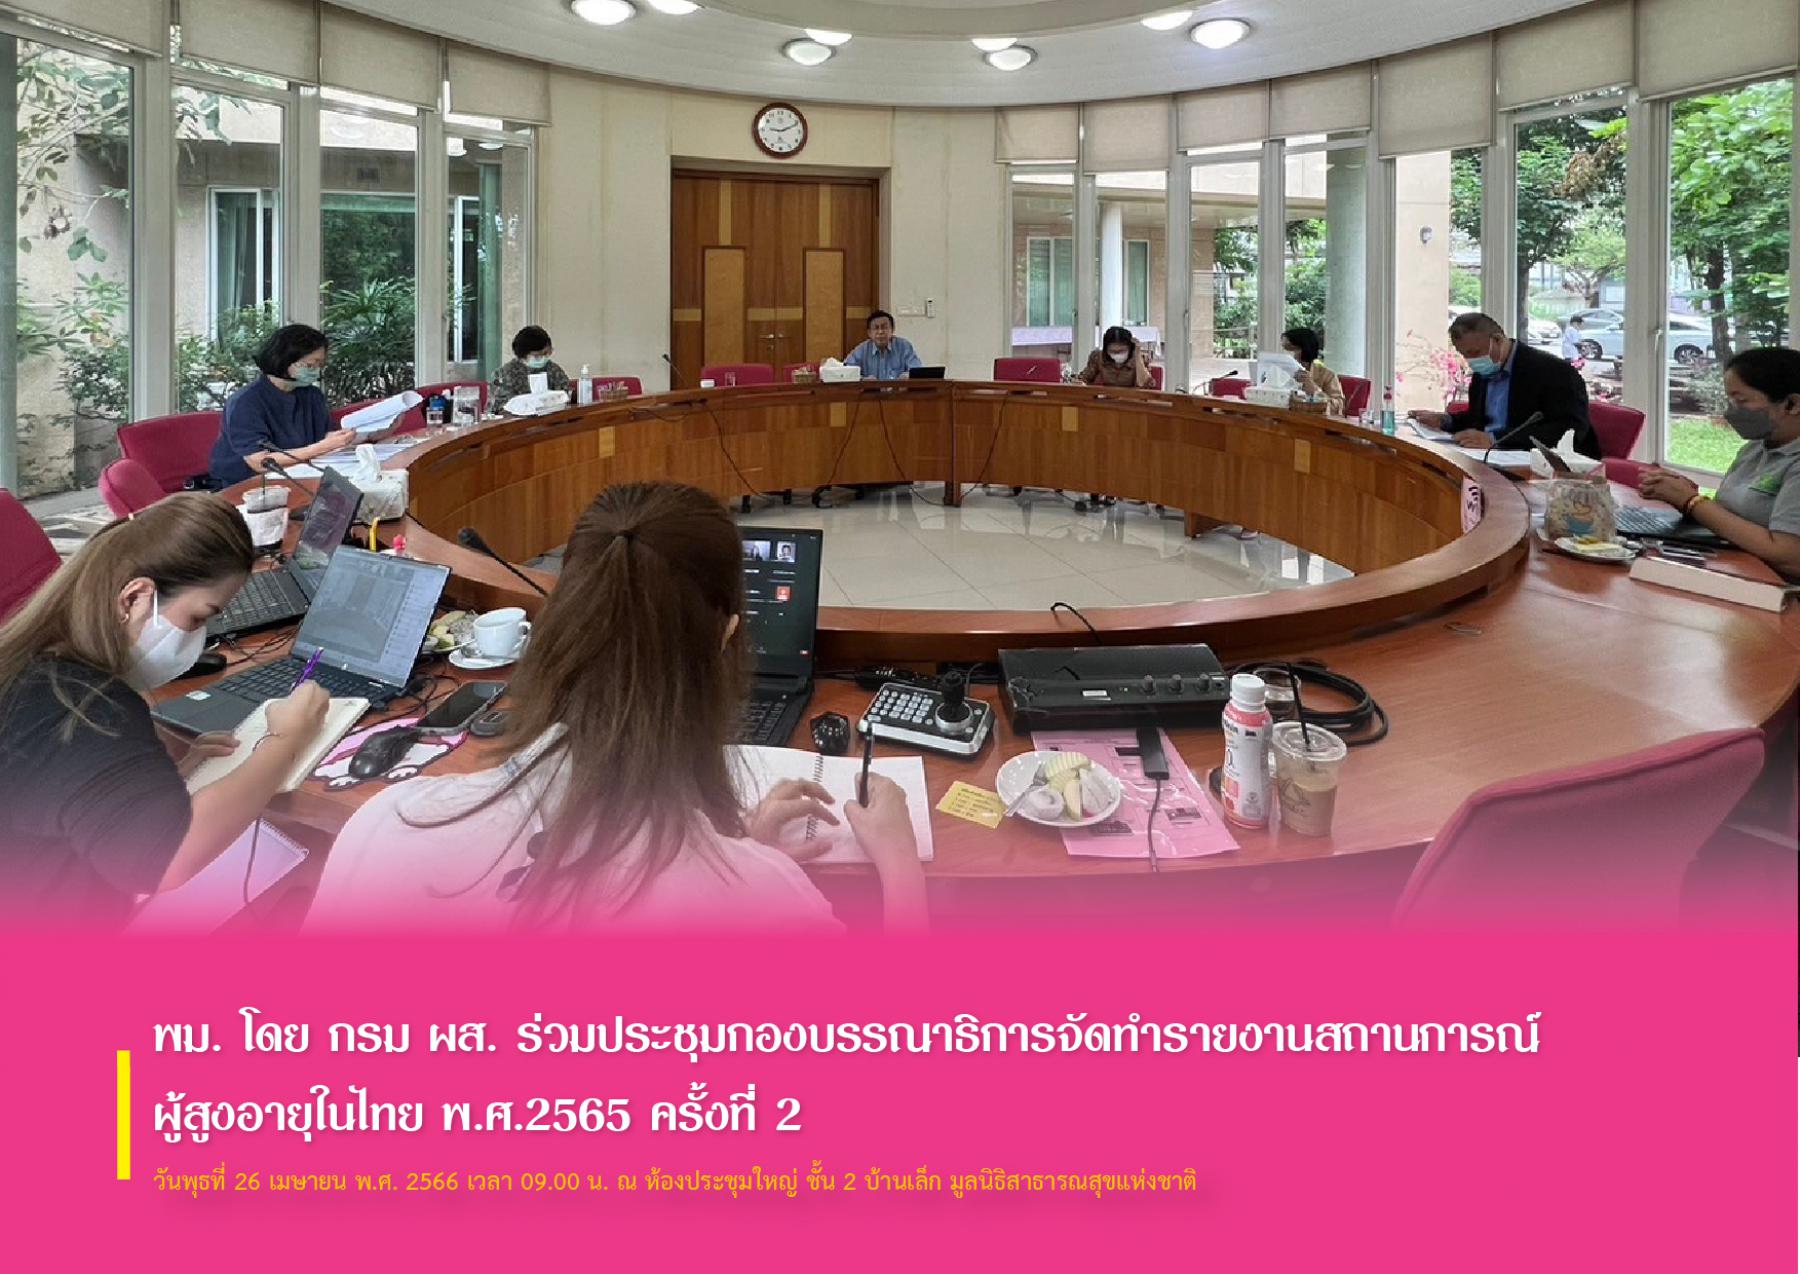 พม. โดย กรม ผส. ร่วมประชุมกองบรรณาธิการจัดทำรายงานสถานการณ์ผู้สูงอายุในไทย พ.ศ.2565 ครั้งที่ 2